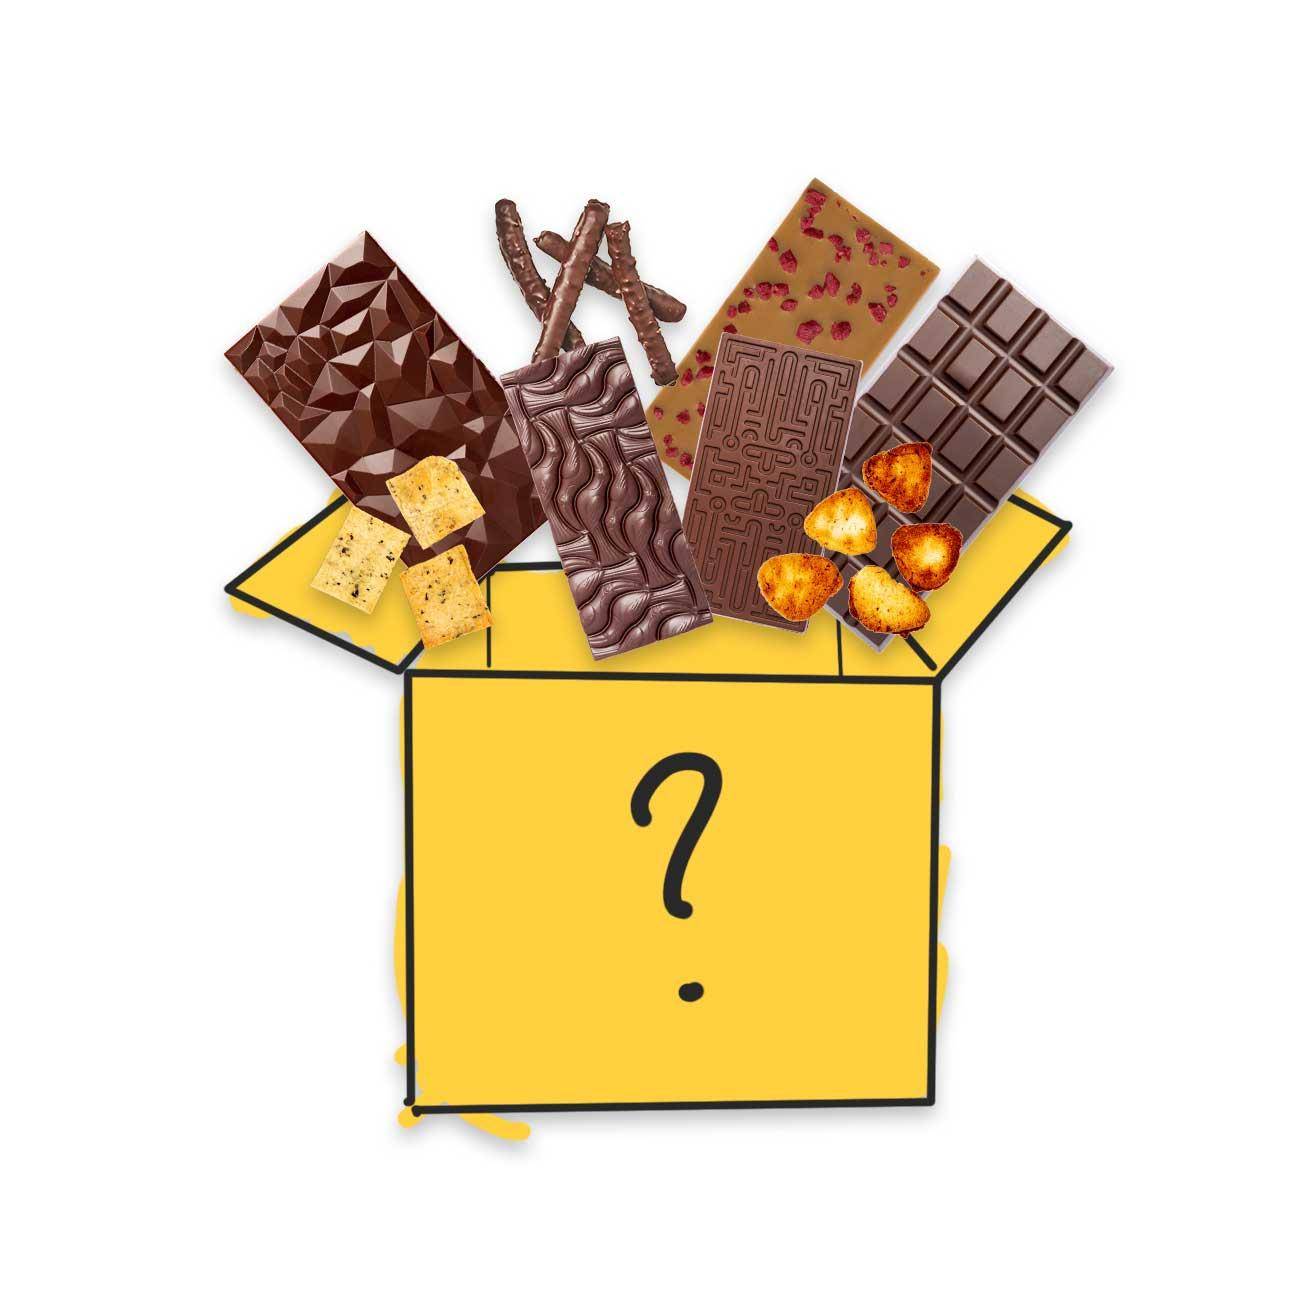 Eine gezeichnete gelbe Box mit Fragezeichen, über der einige Fotos von verschiedenen Schokoladentafeln, Keksen und Crackern abgebildet sind